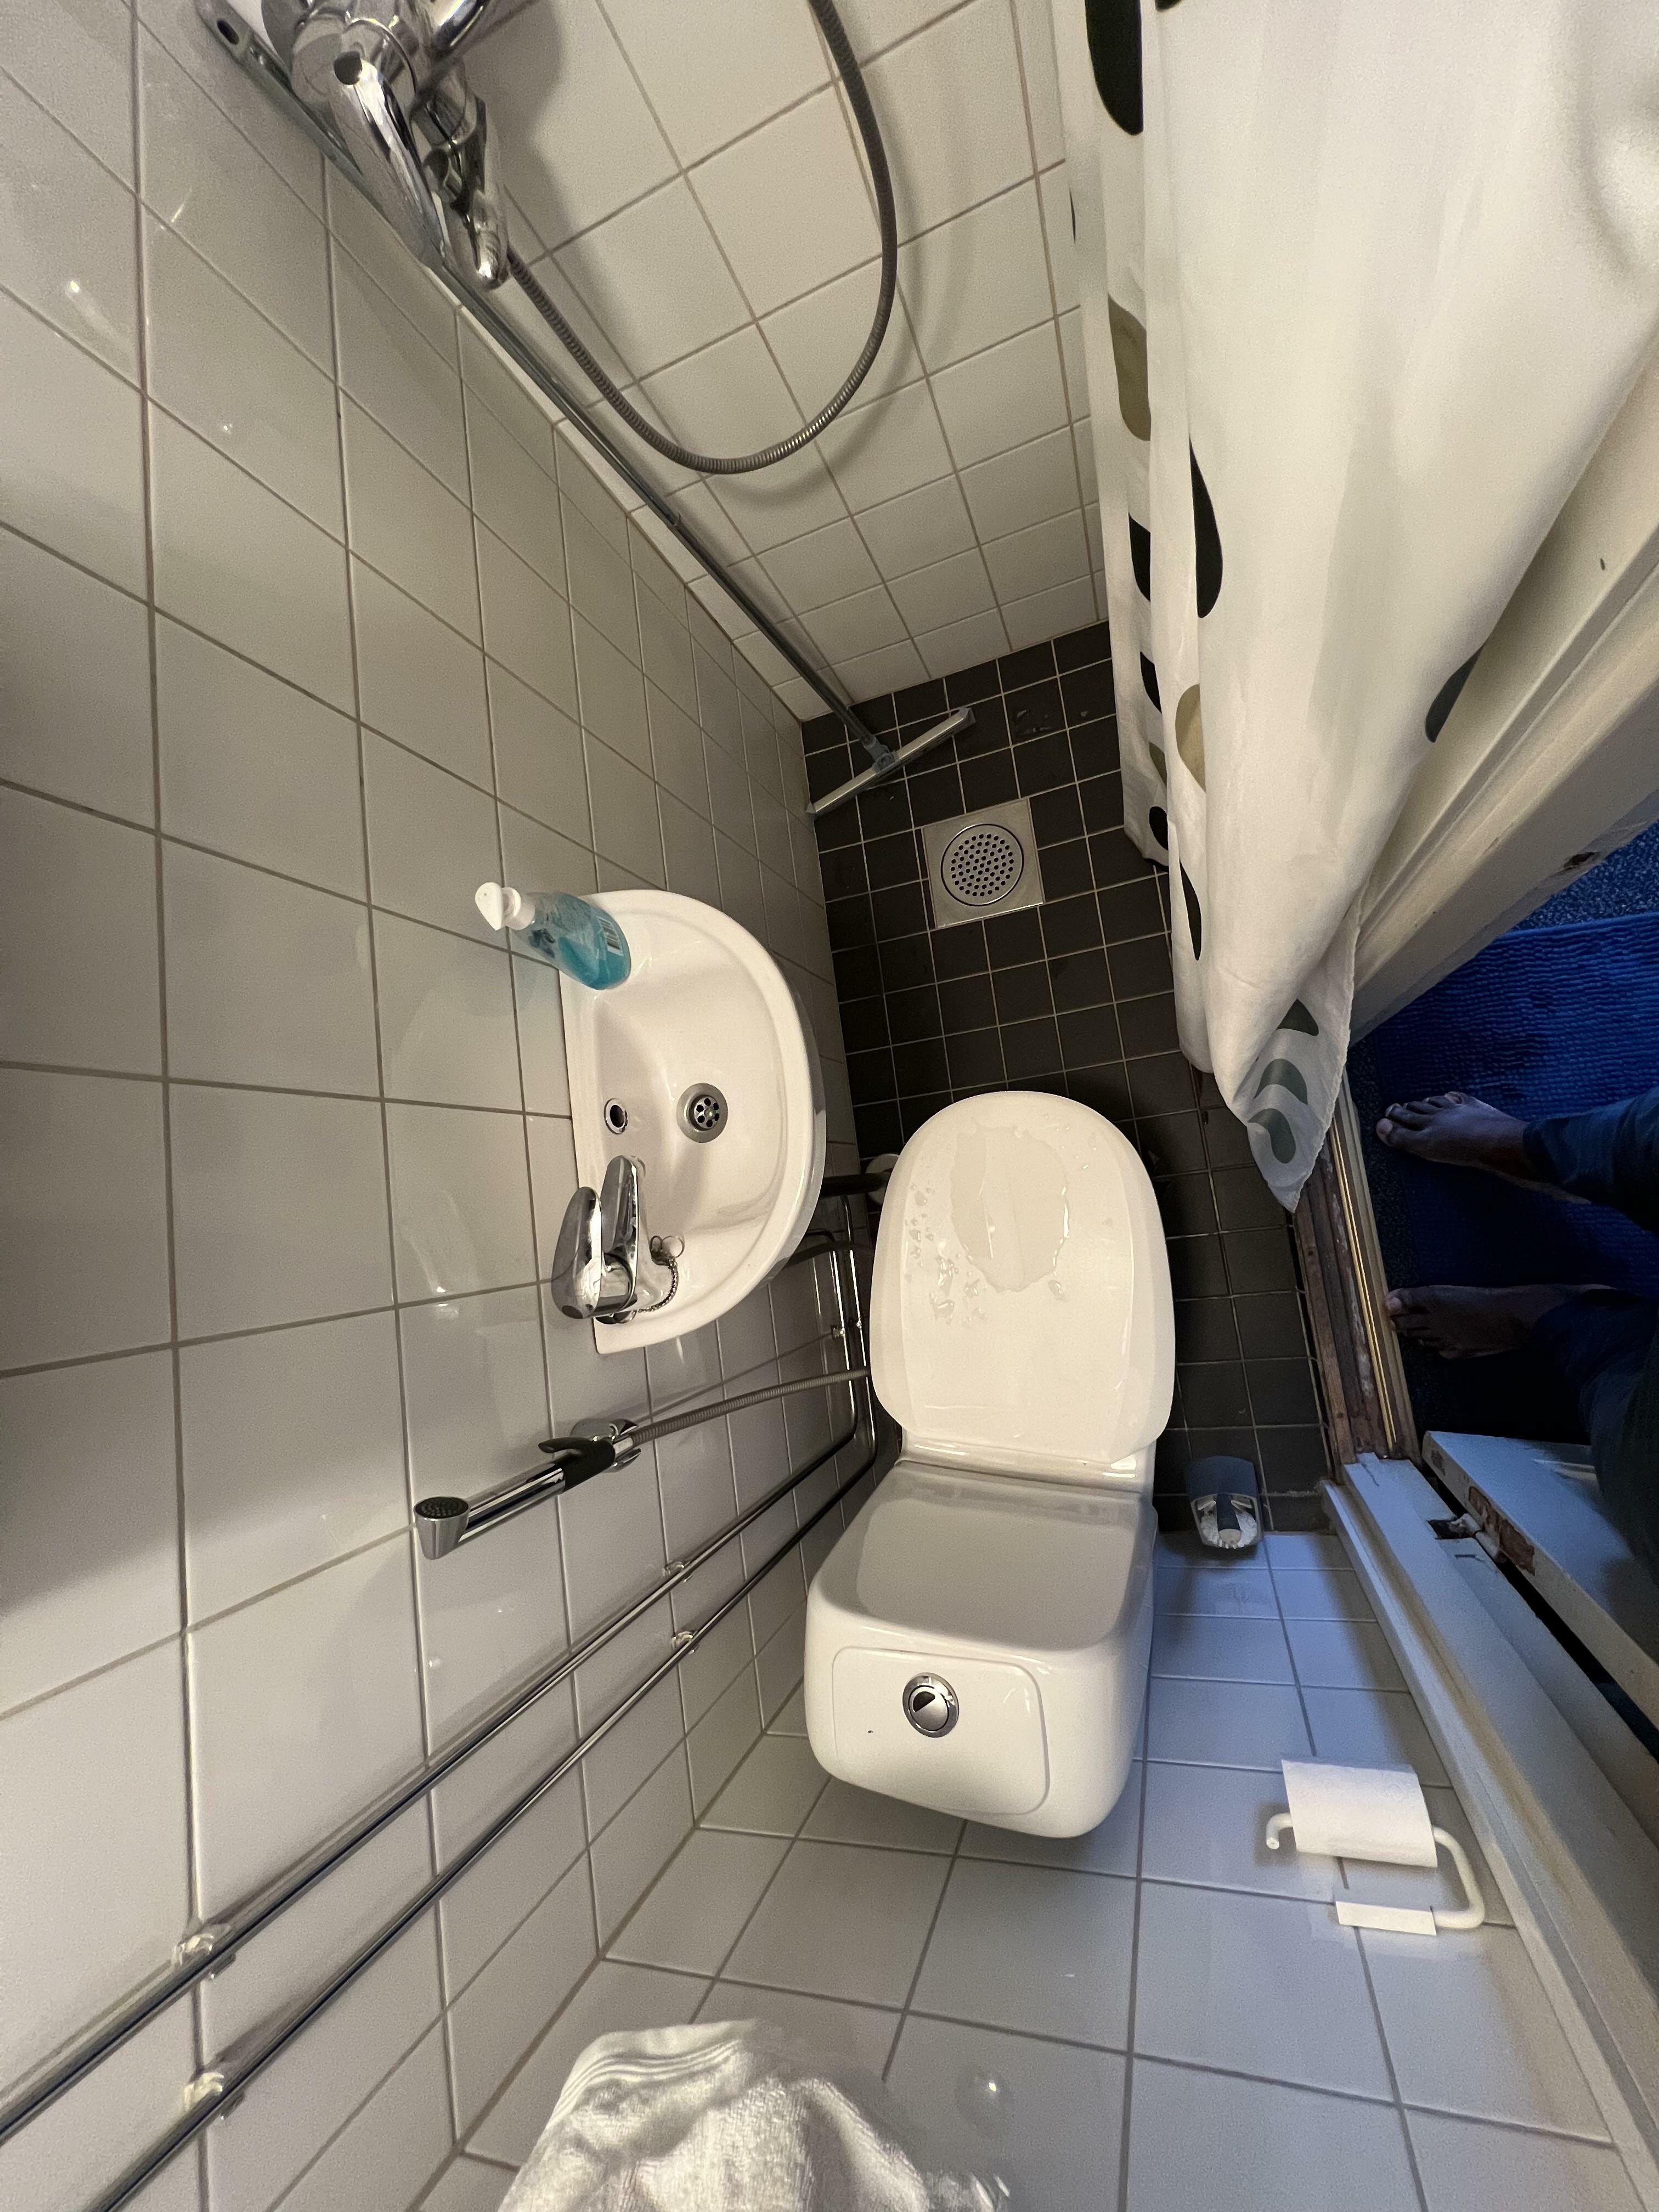 La salle de bain de mon Airbnb à Helsinki, Finlande. Le bon côté des choses, c'est que je pourrais potentiellement me brosser les dents, me doucher et faire tomber un numéro 2 en même temps.